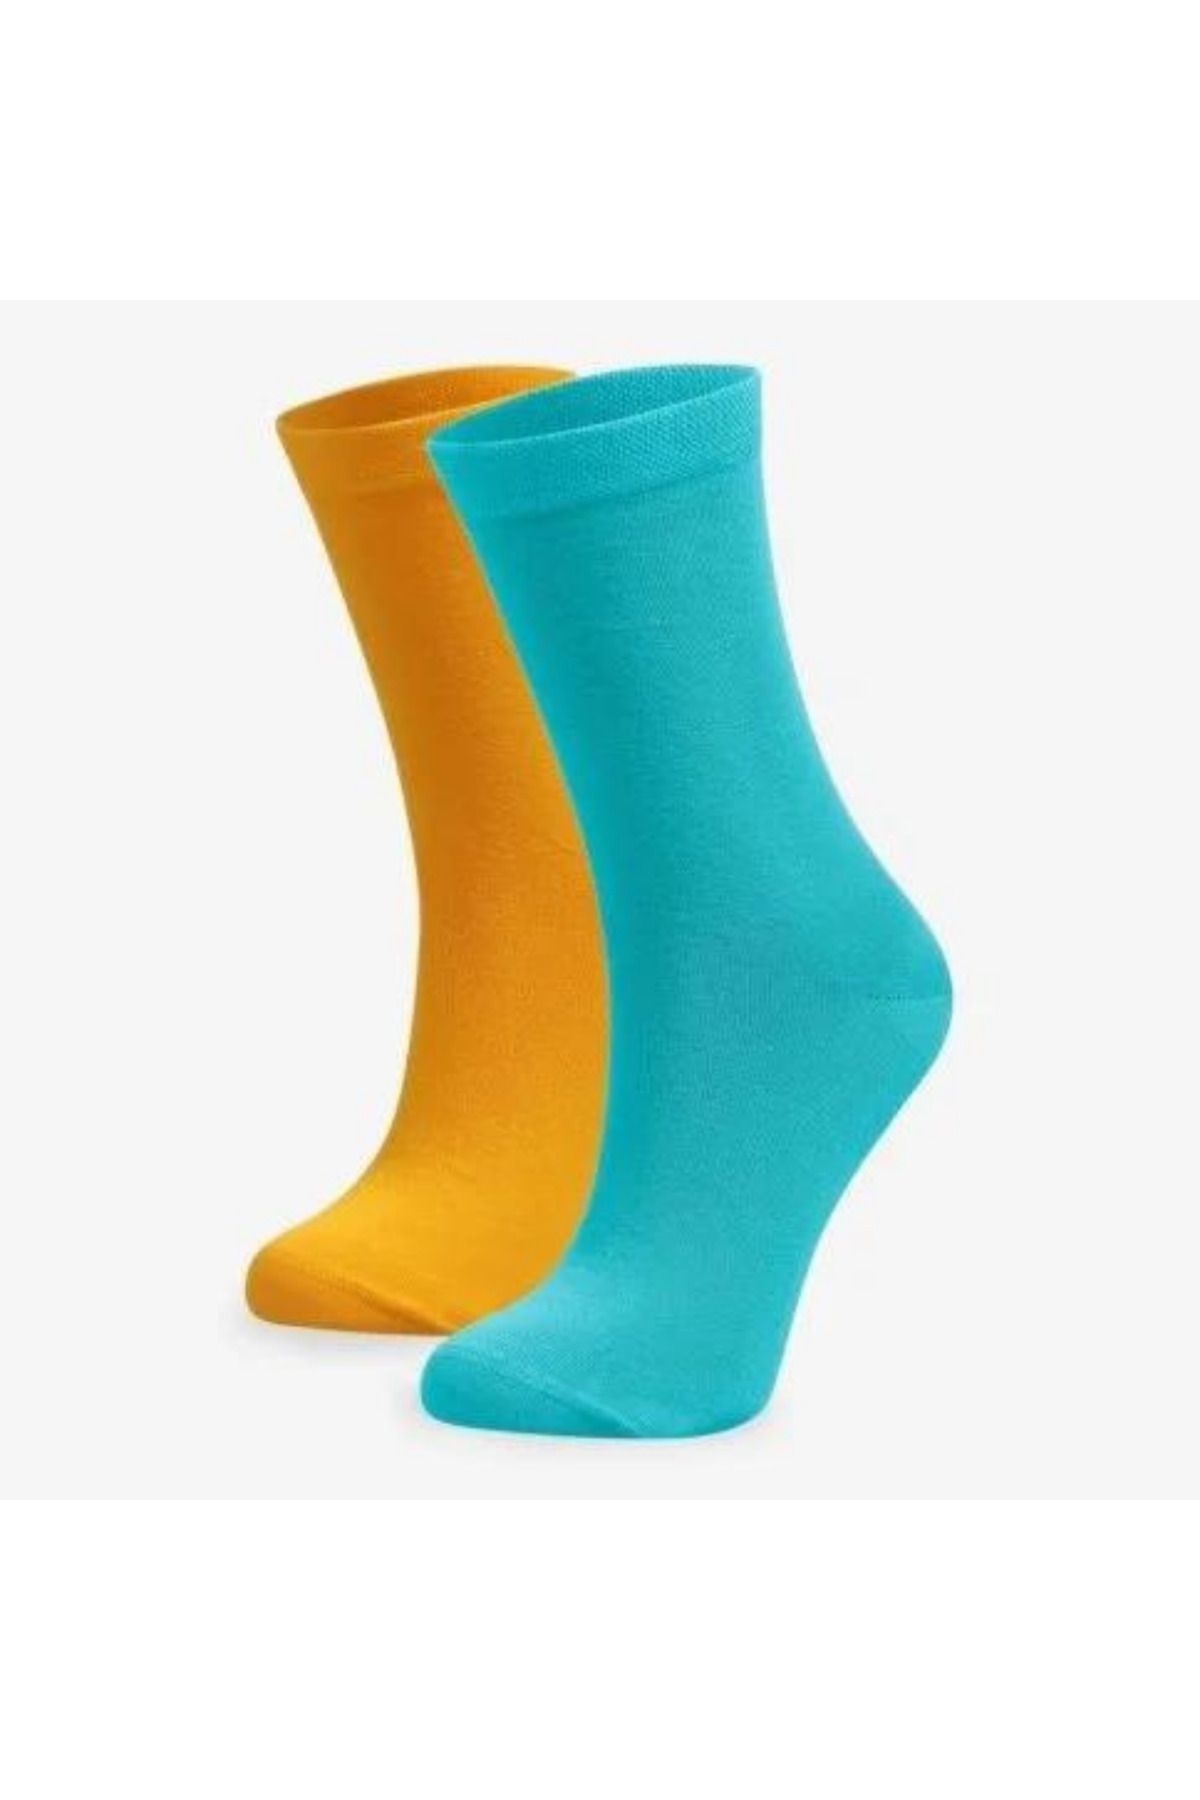 Bolero Çorap Turkuaz Pembe 2'li %100 Organik Kadın Pamuk Çorap